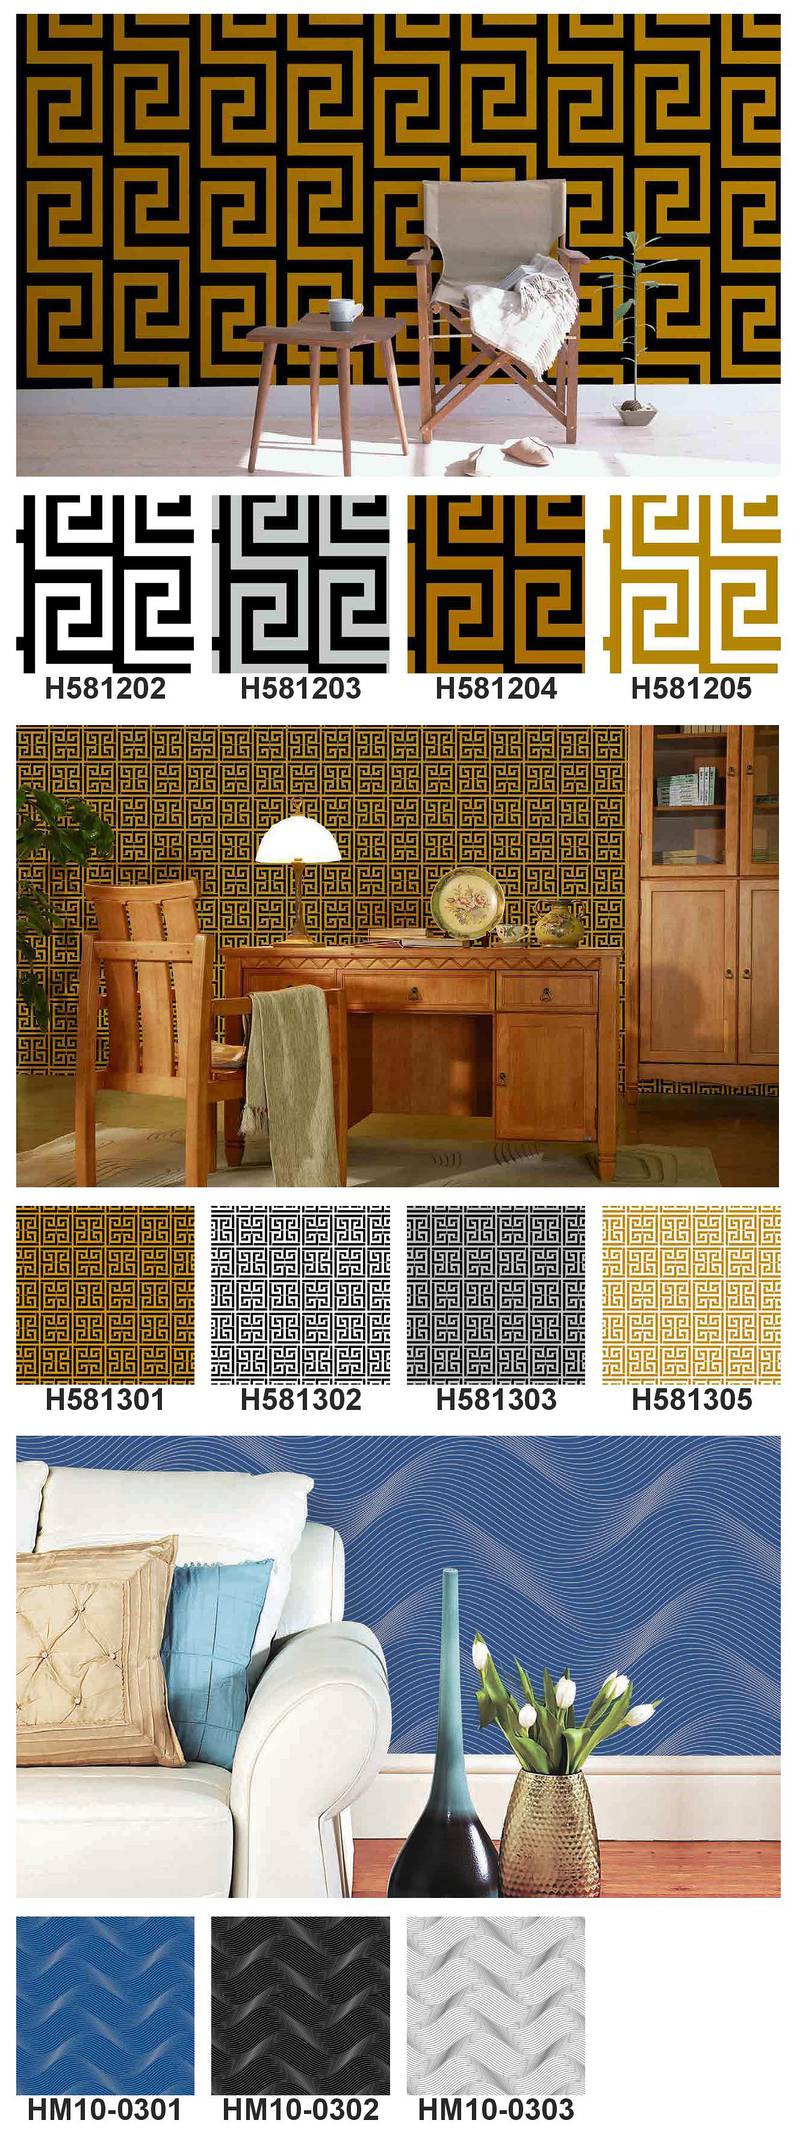 wallpapers, 3D designs  Wooden floor Vinyl floor Window blind pvcPanel 2